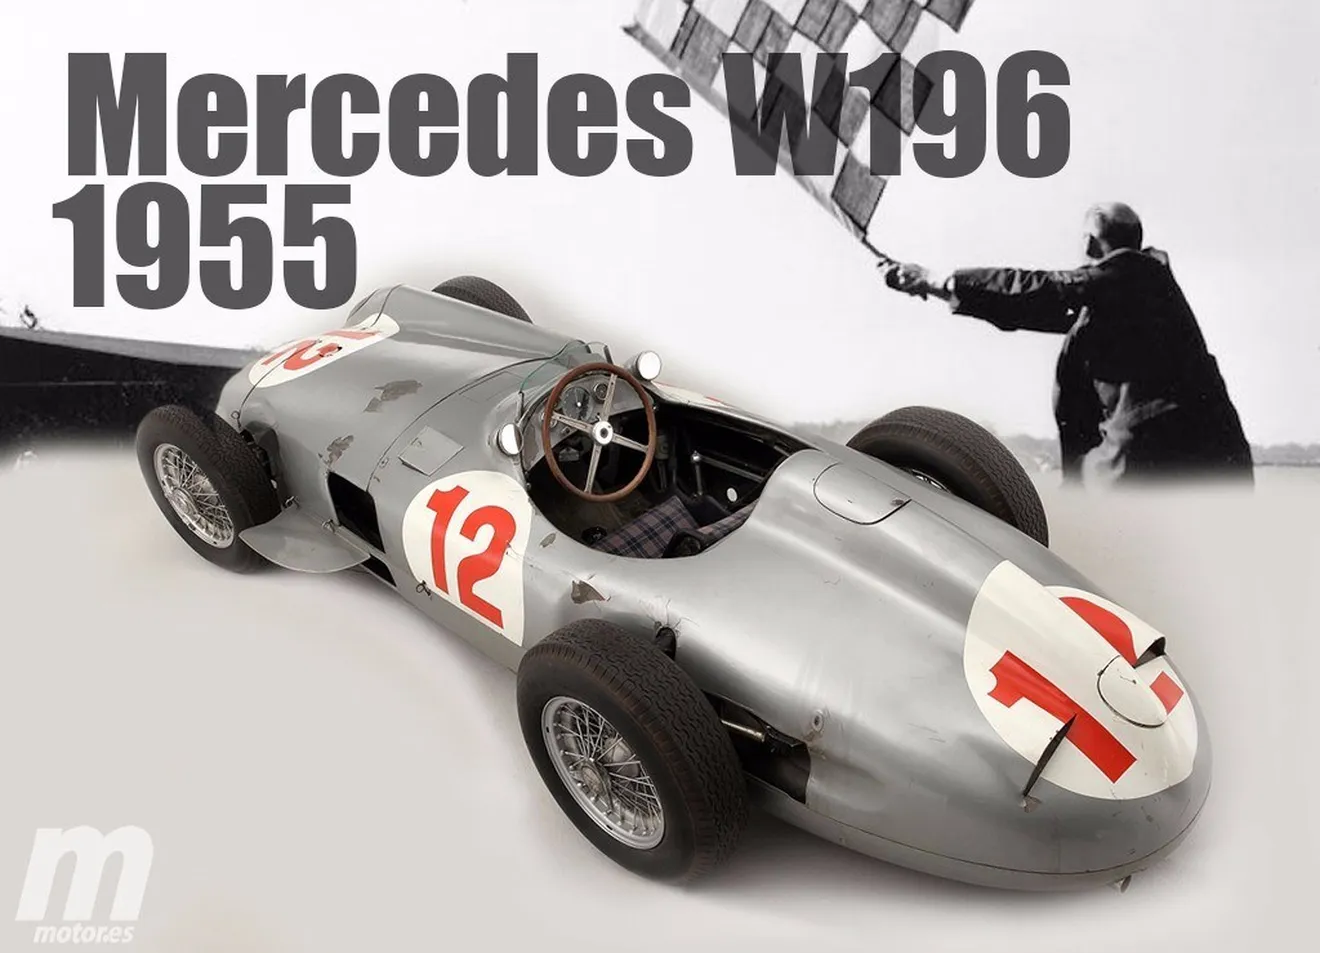 Las máquinas campeonas de la F1: Mercedes W196